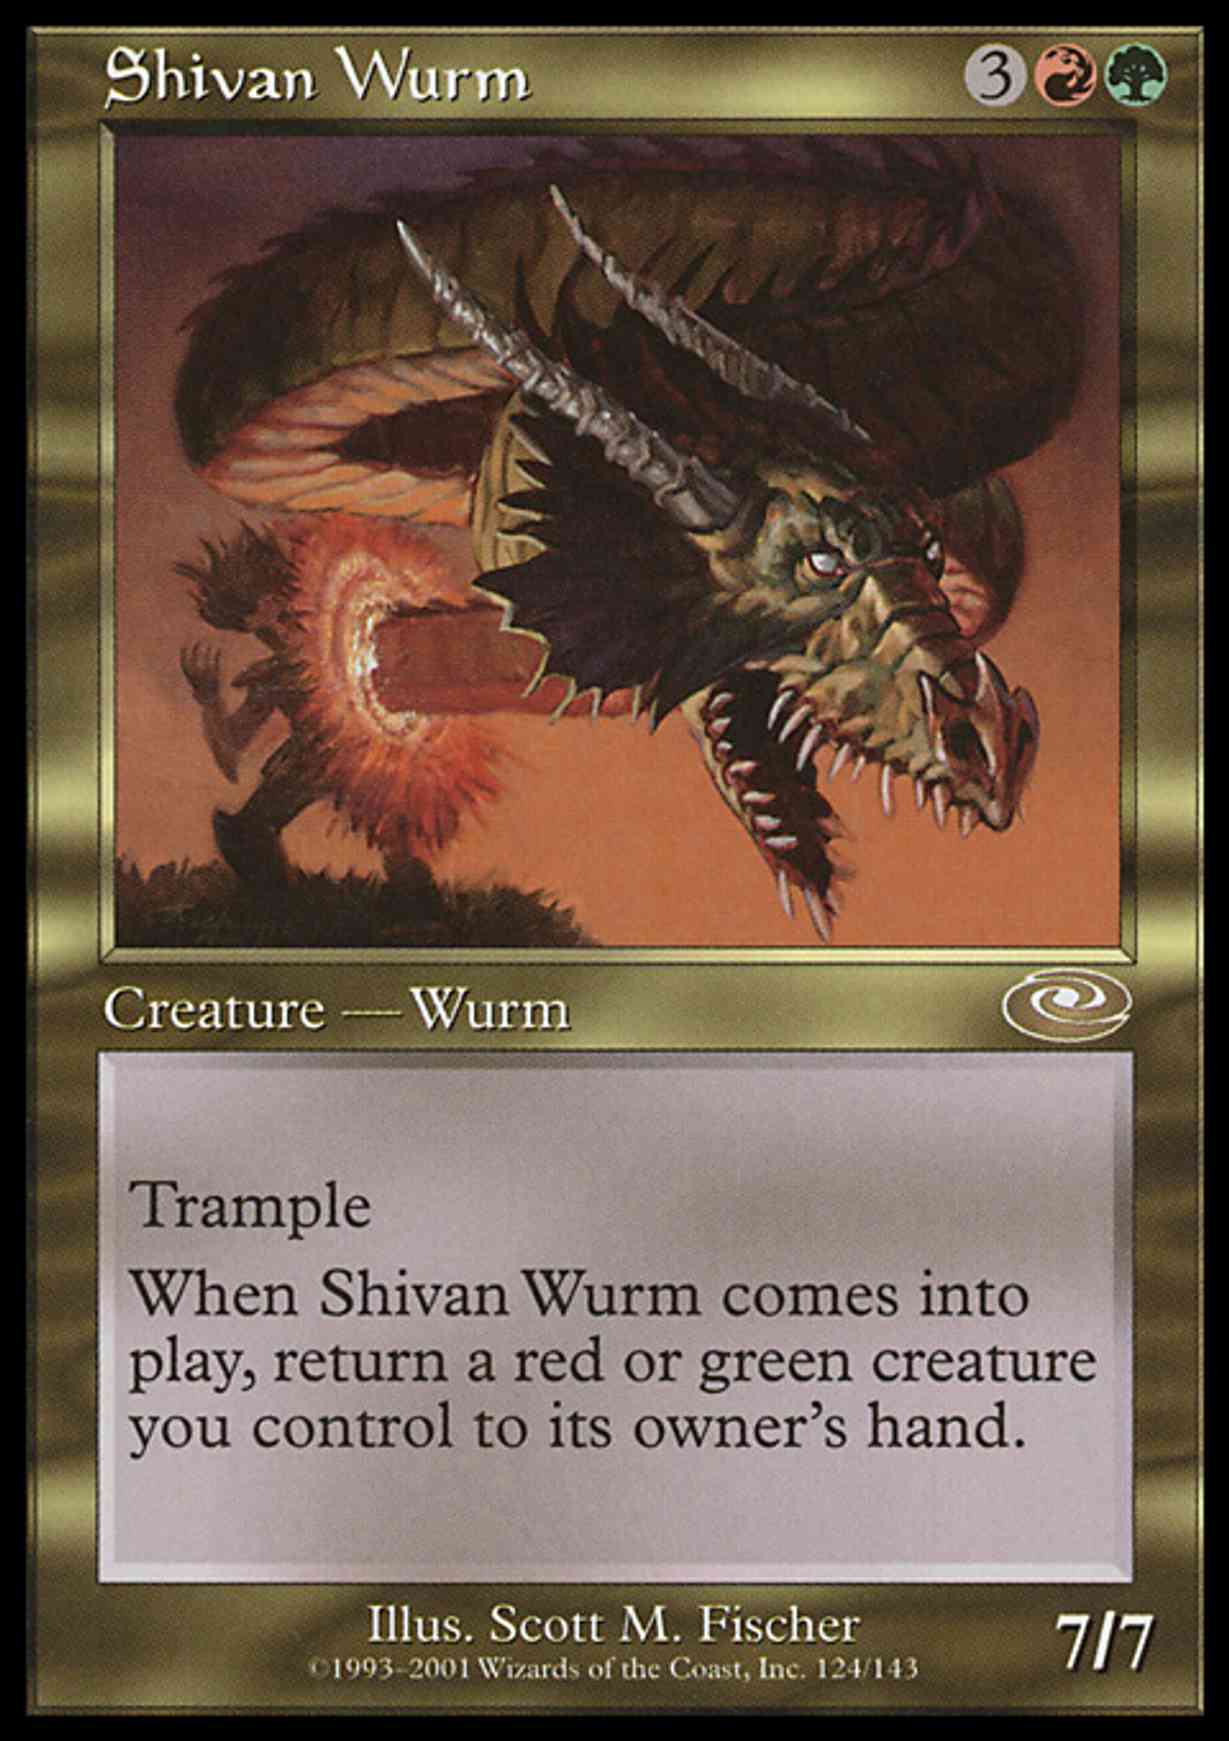 Shivan Wurm magic card front